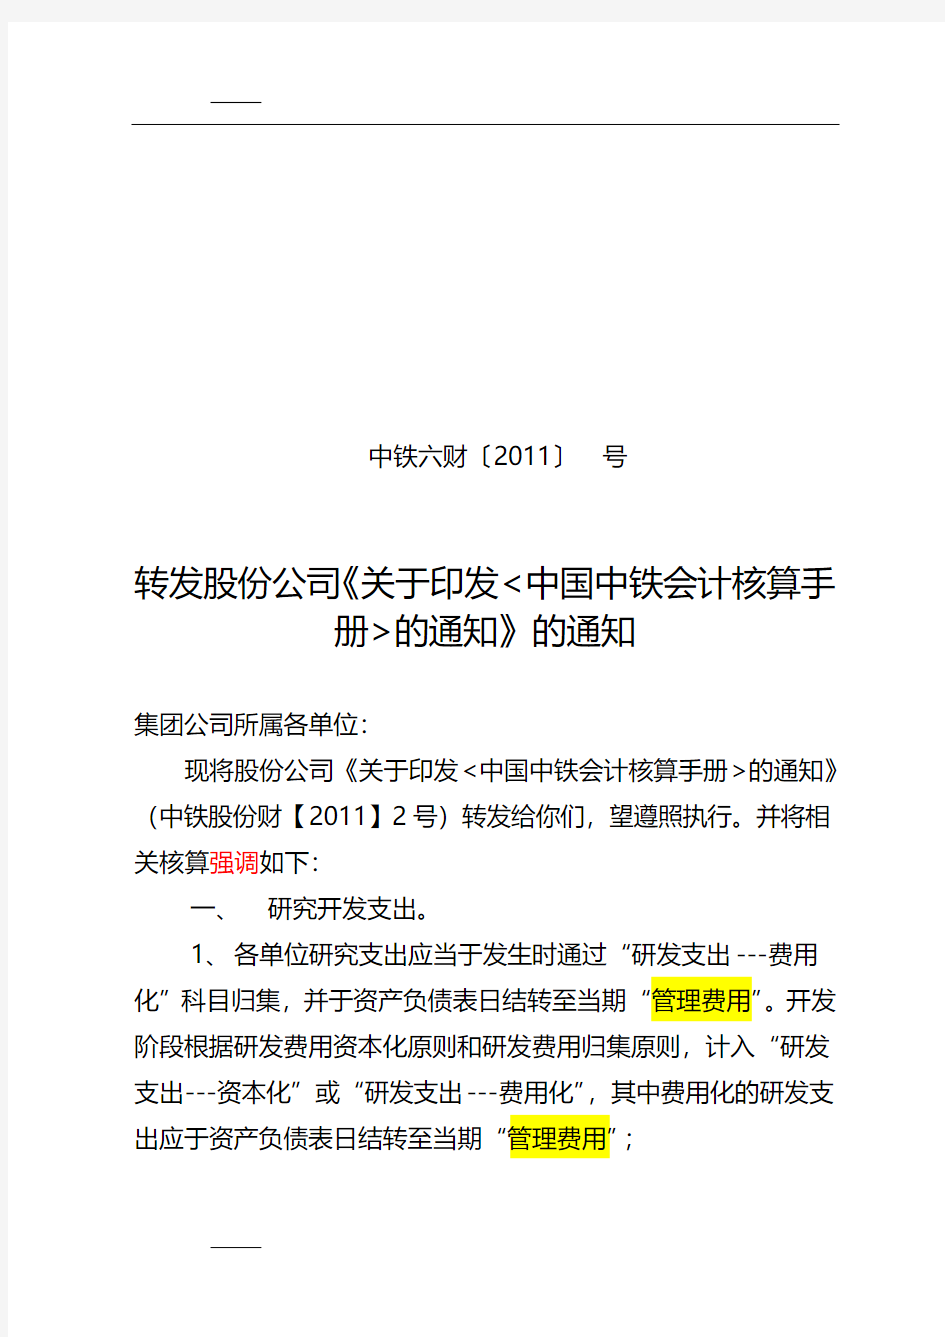 关于执行《中国中铁会计核算手册》的通知草稿0330